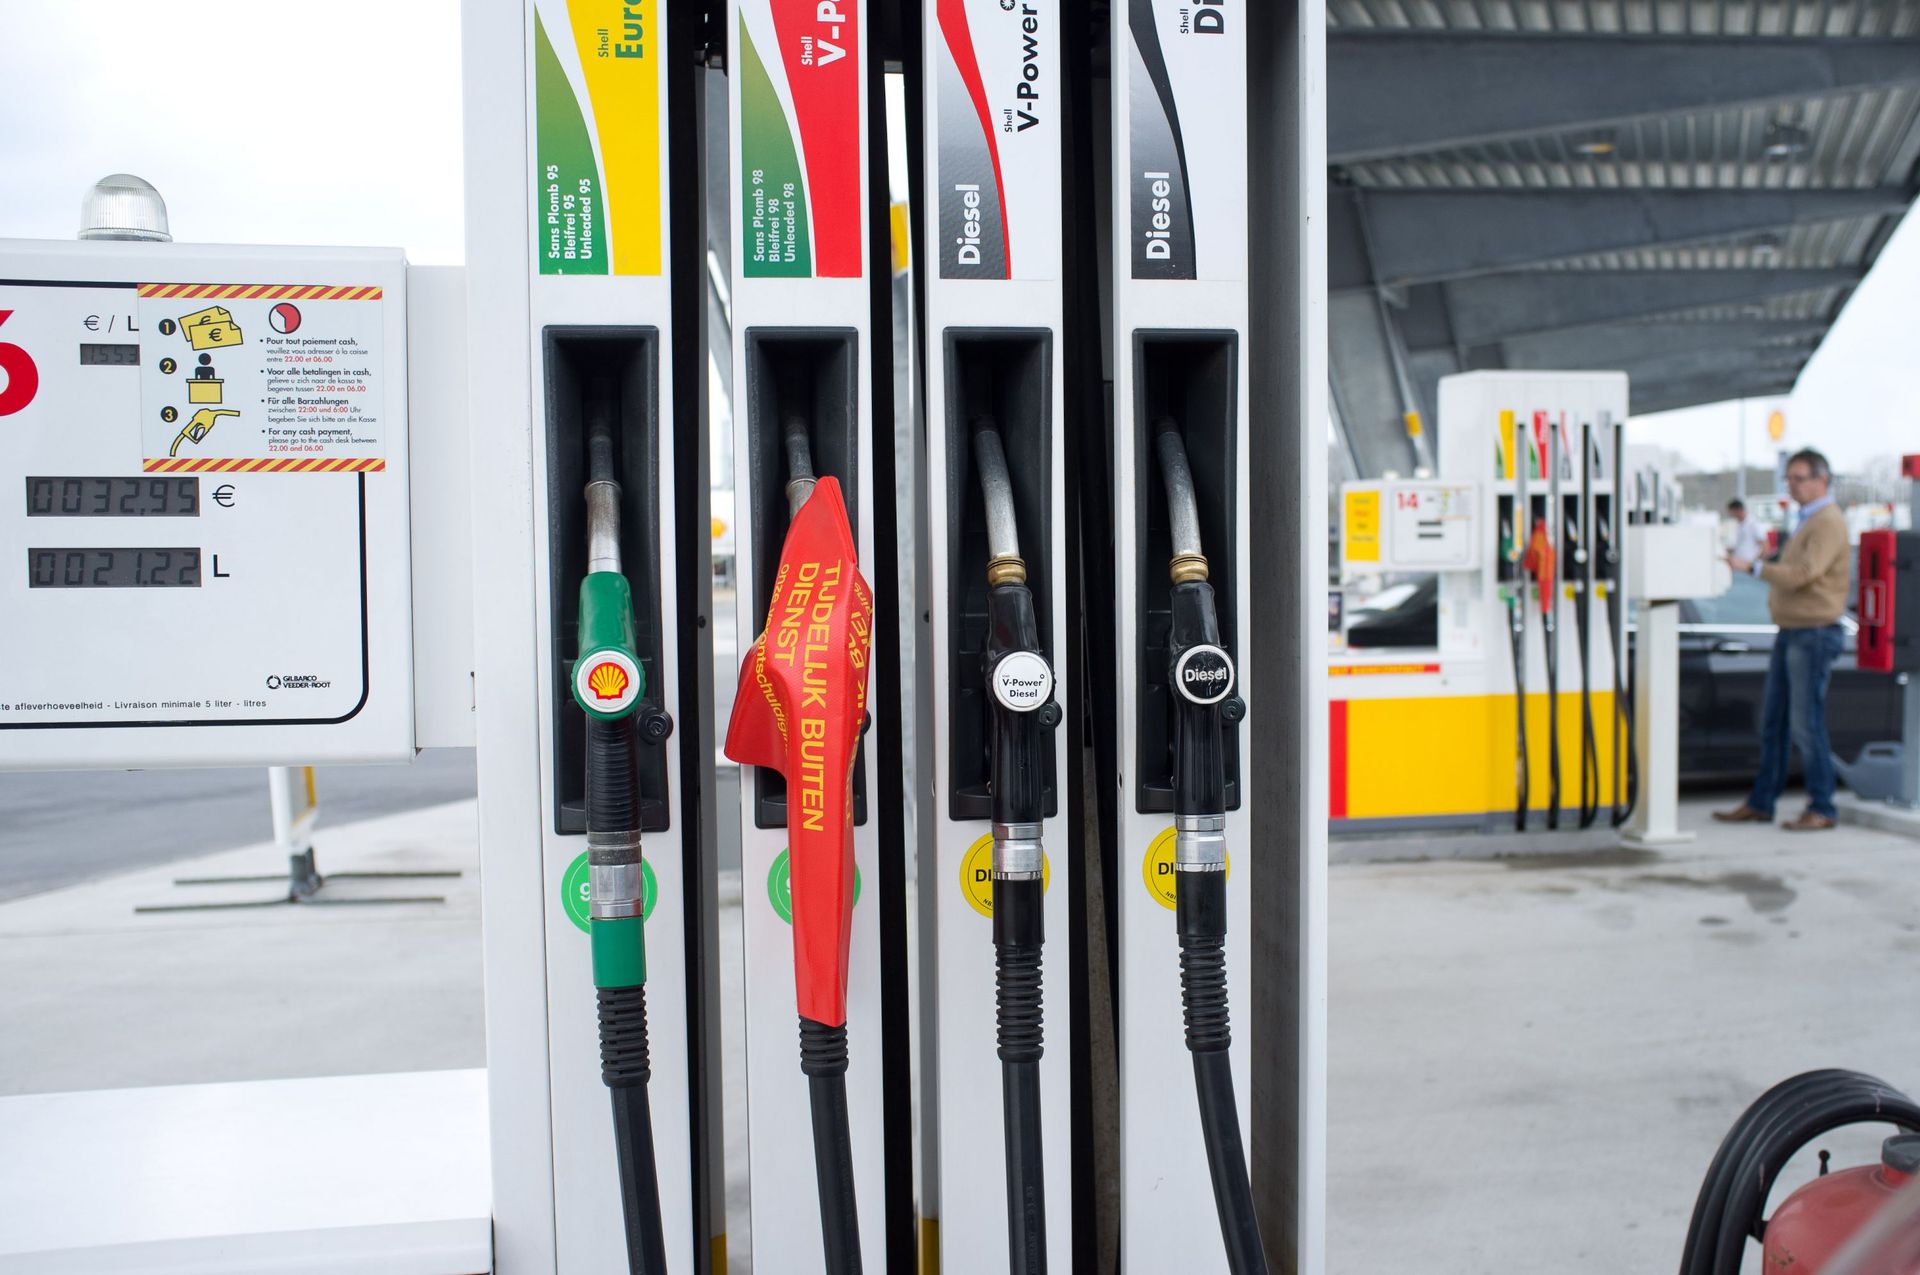 Samedi, les prix des carburants seront au plus bas depuis avril 2009